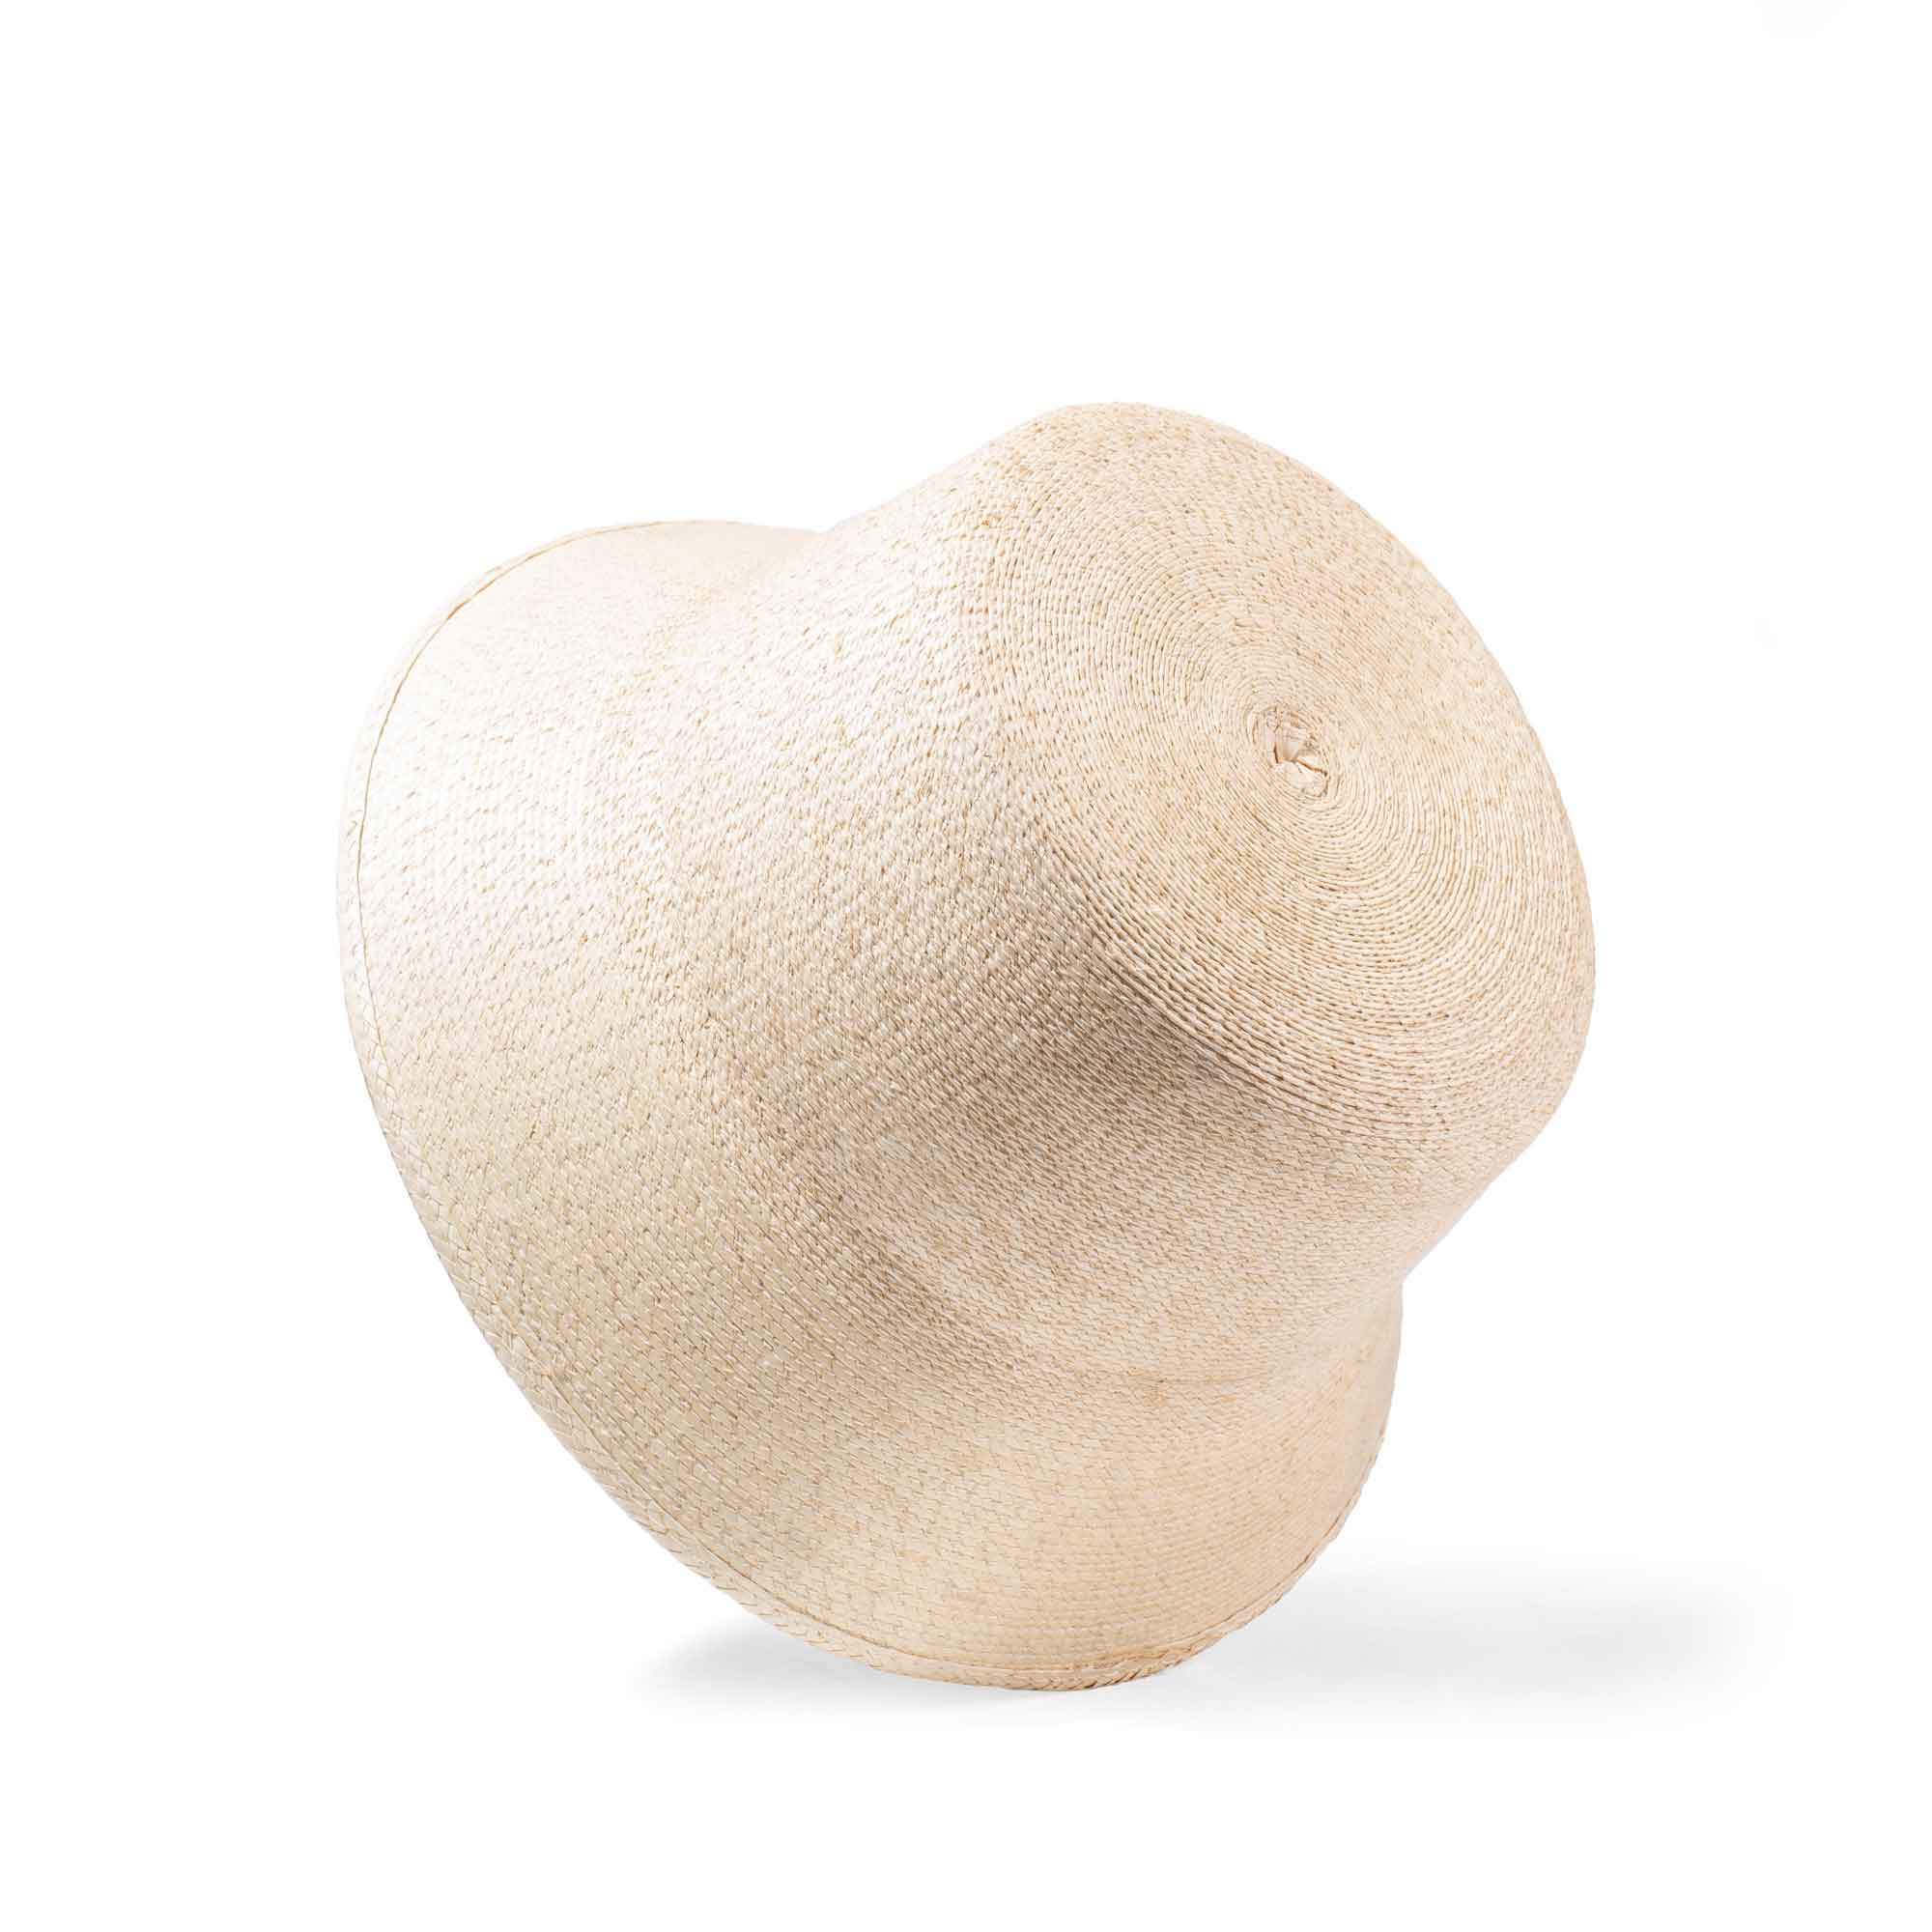 Palma Bucket Hat - Natural